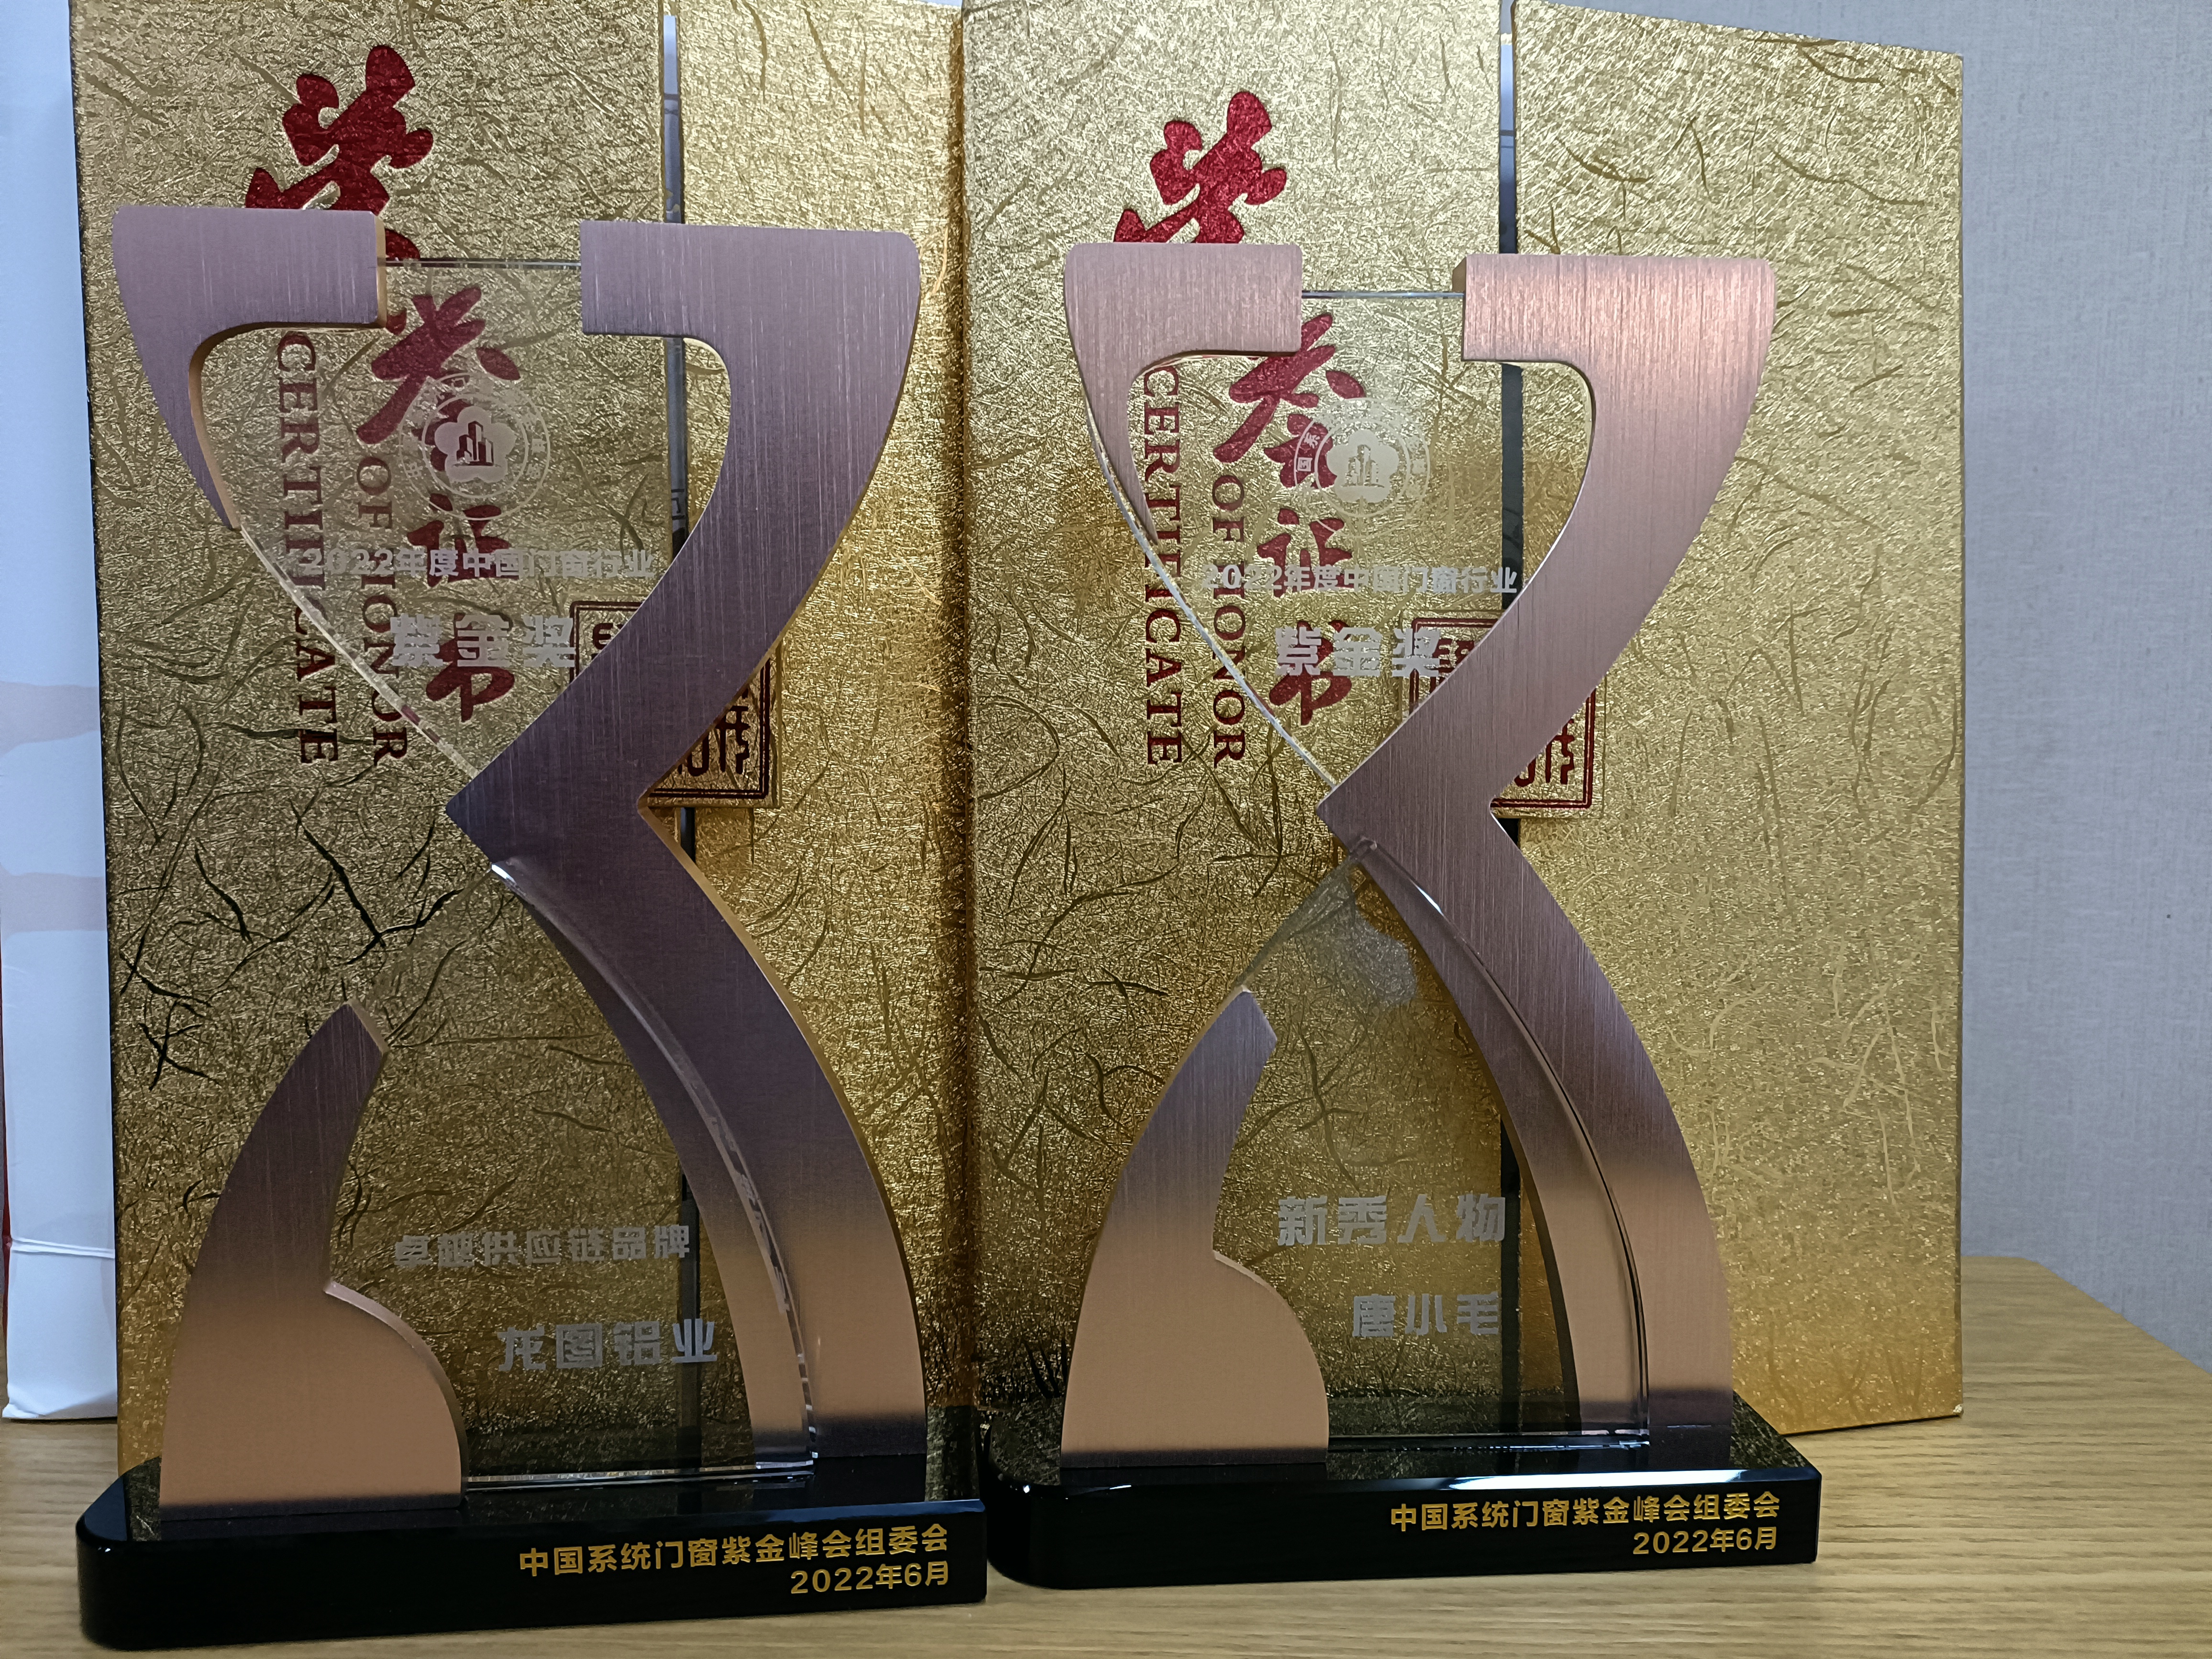 上海总部总经理唐总的认可，荣获”新秀人物紫金奖“